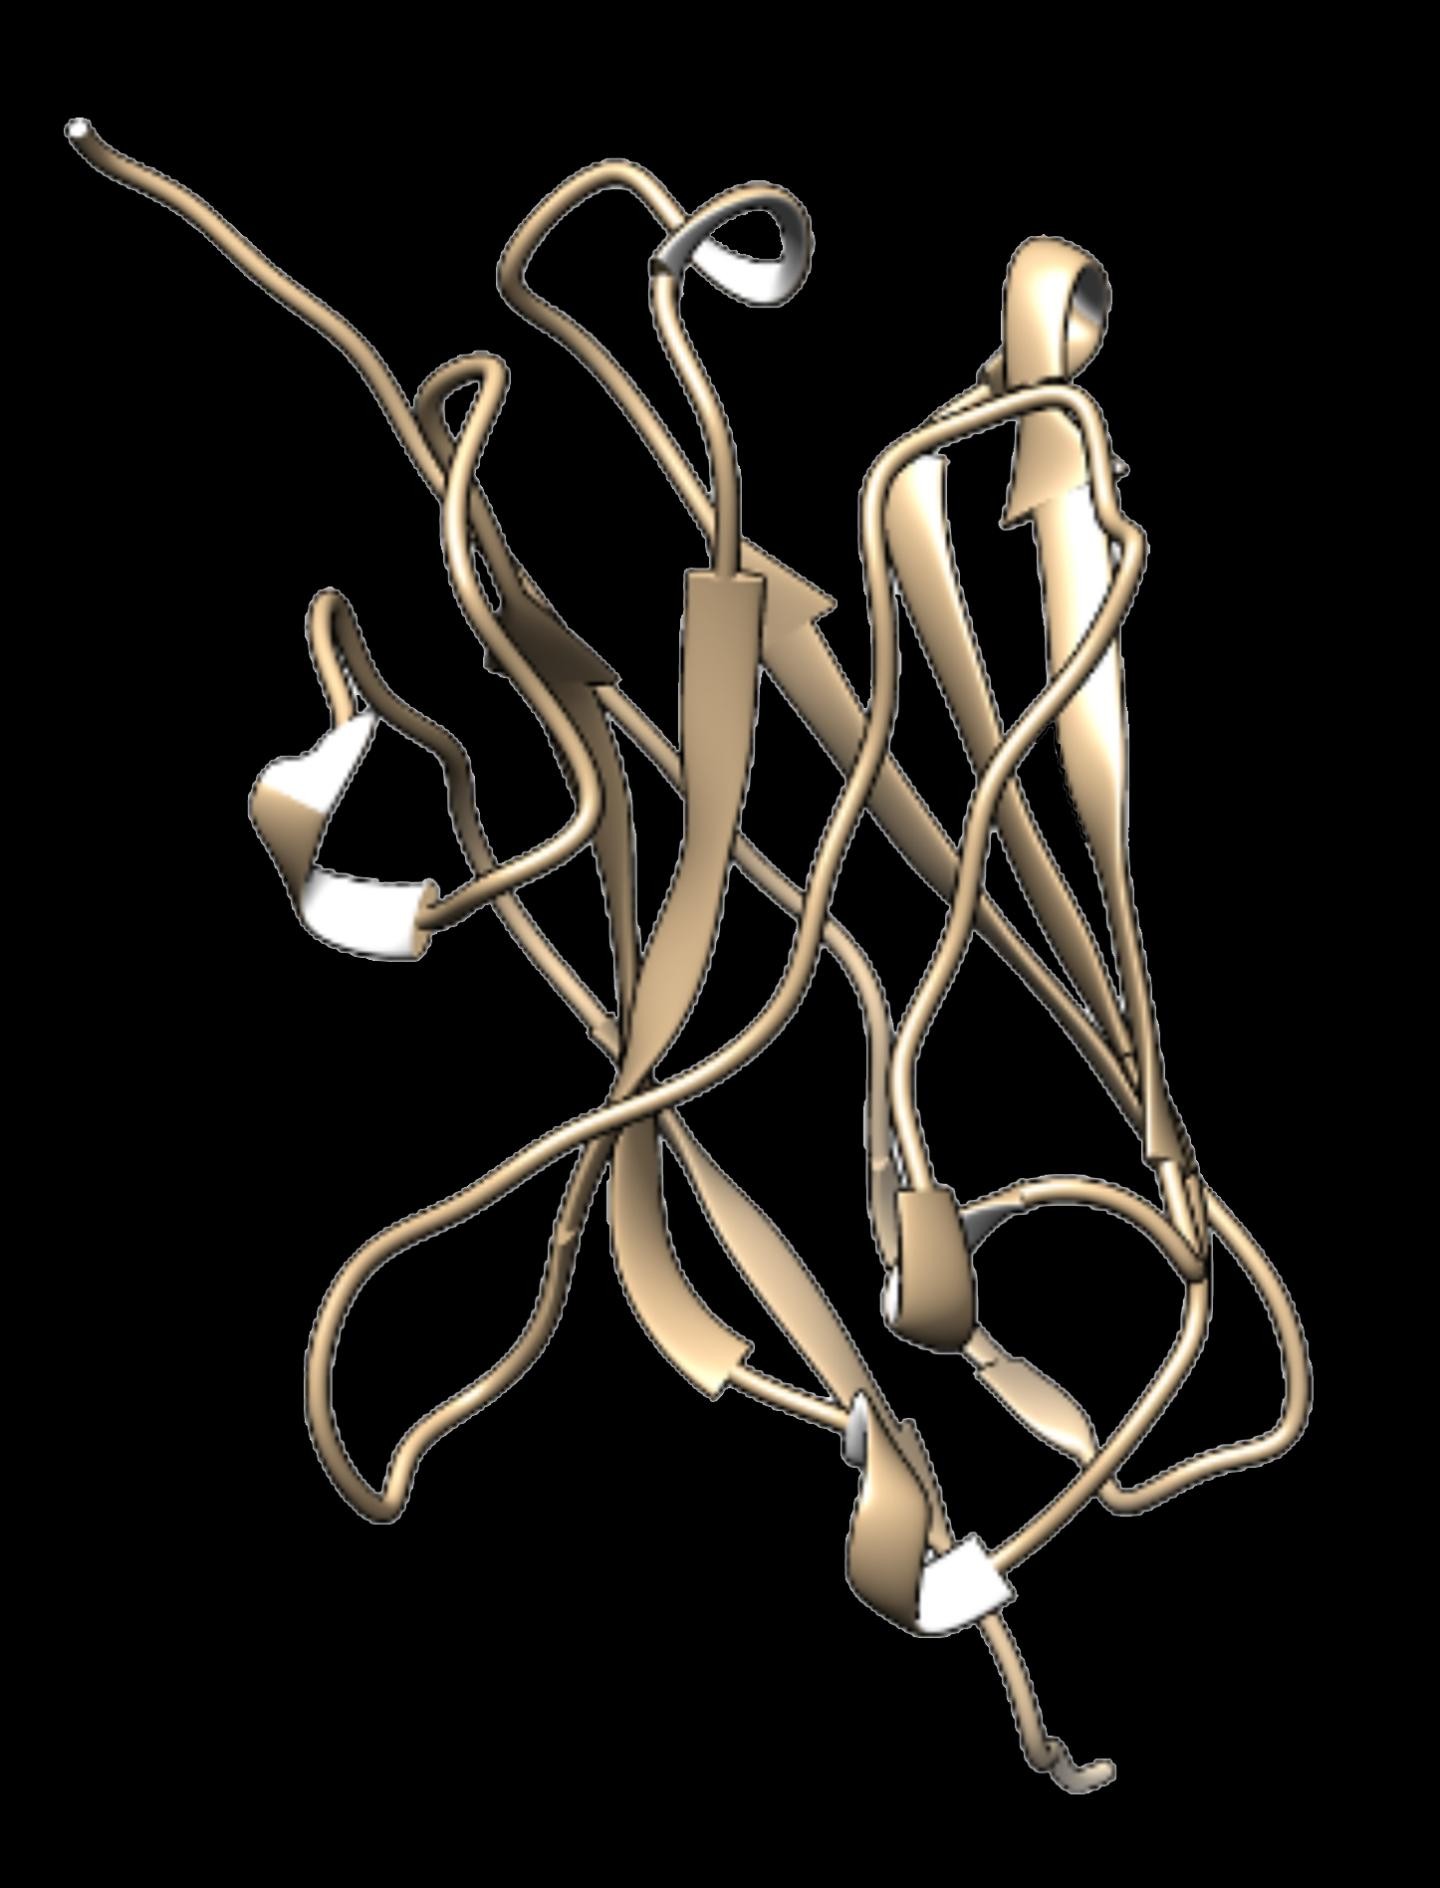 Nanocorpo de lhama isolado por pesquisadores do NIH, nos Estados Unidos (Foto: Cortesia do laboratório de Brody/NIH/NINDS.)